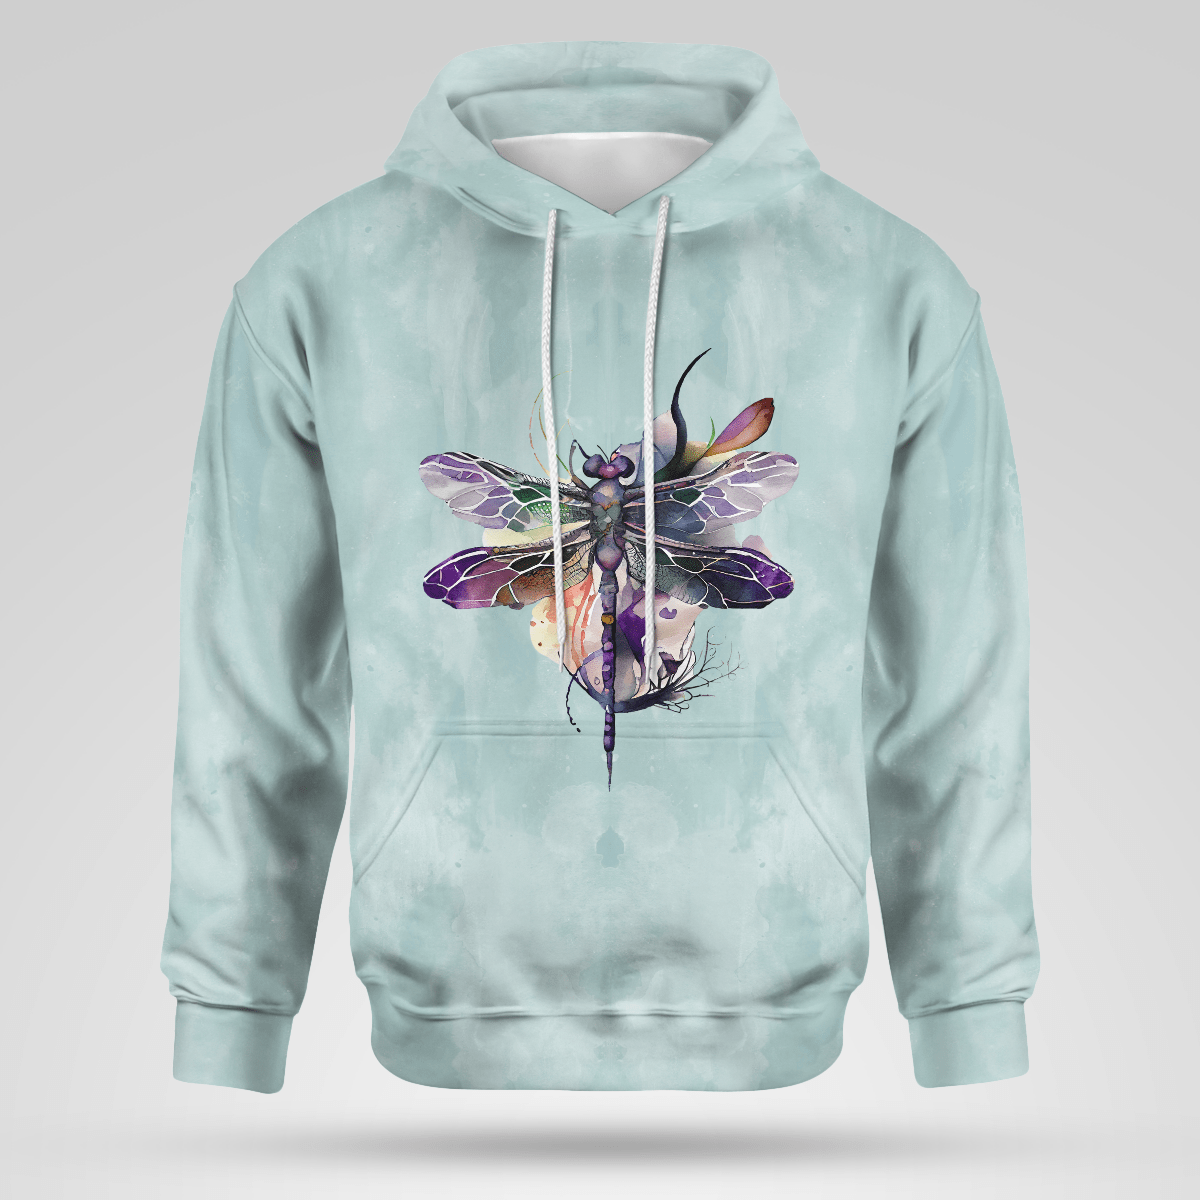 Dragonfly hoodie